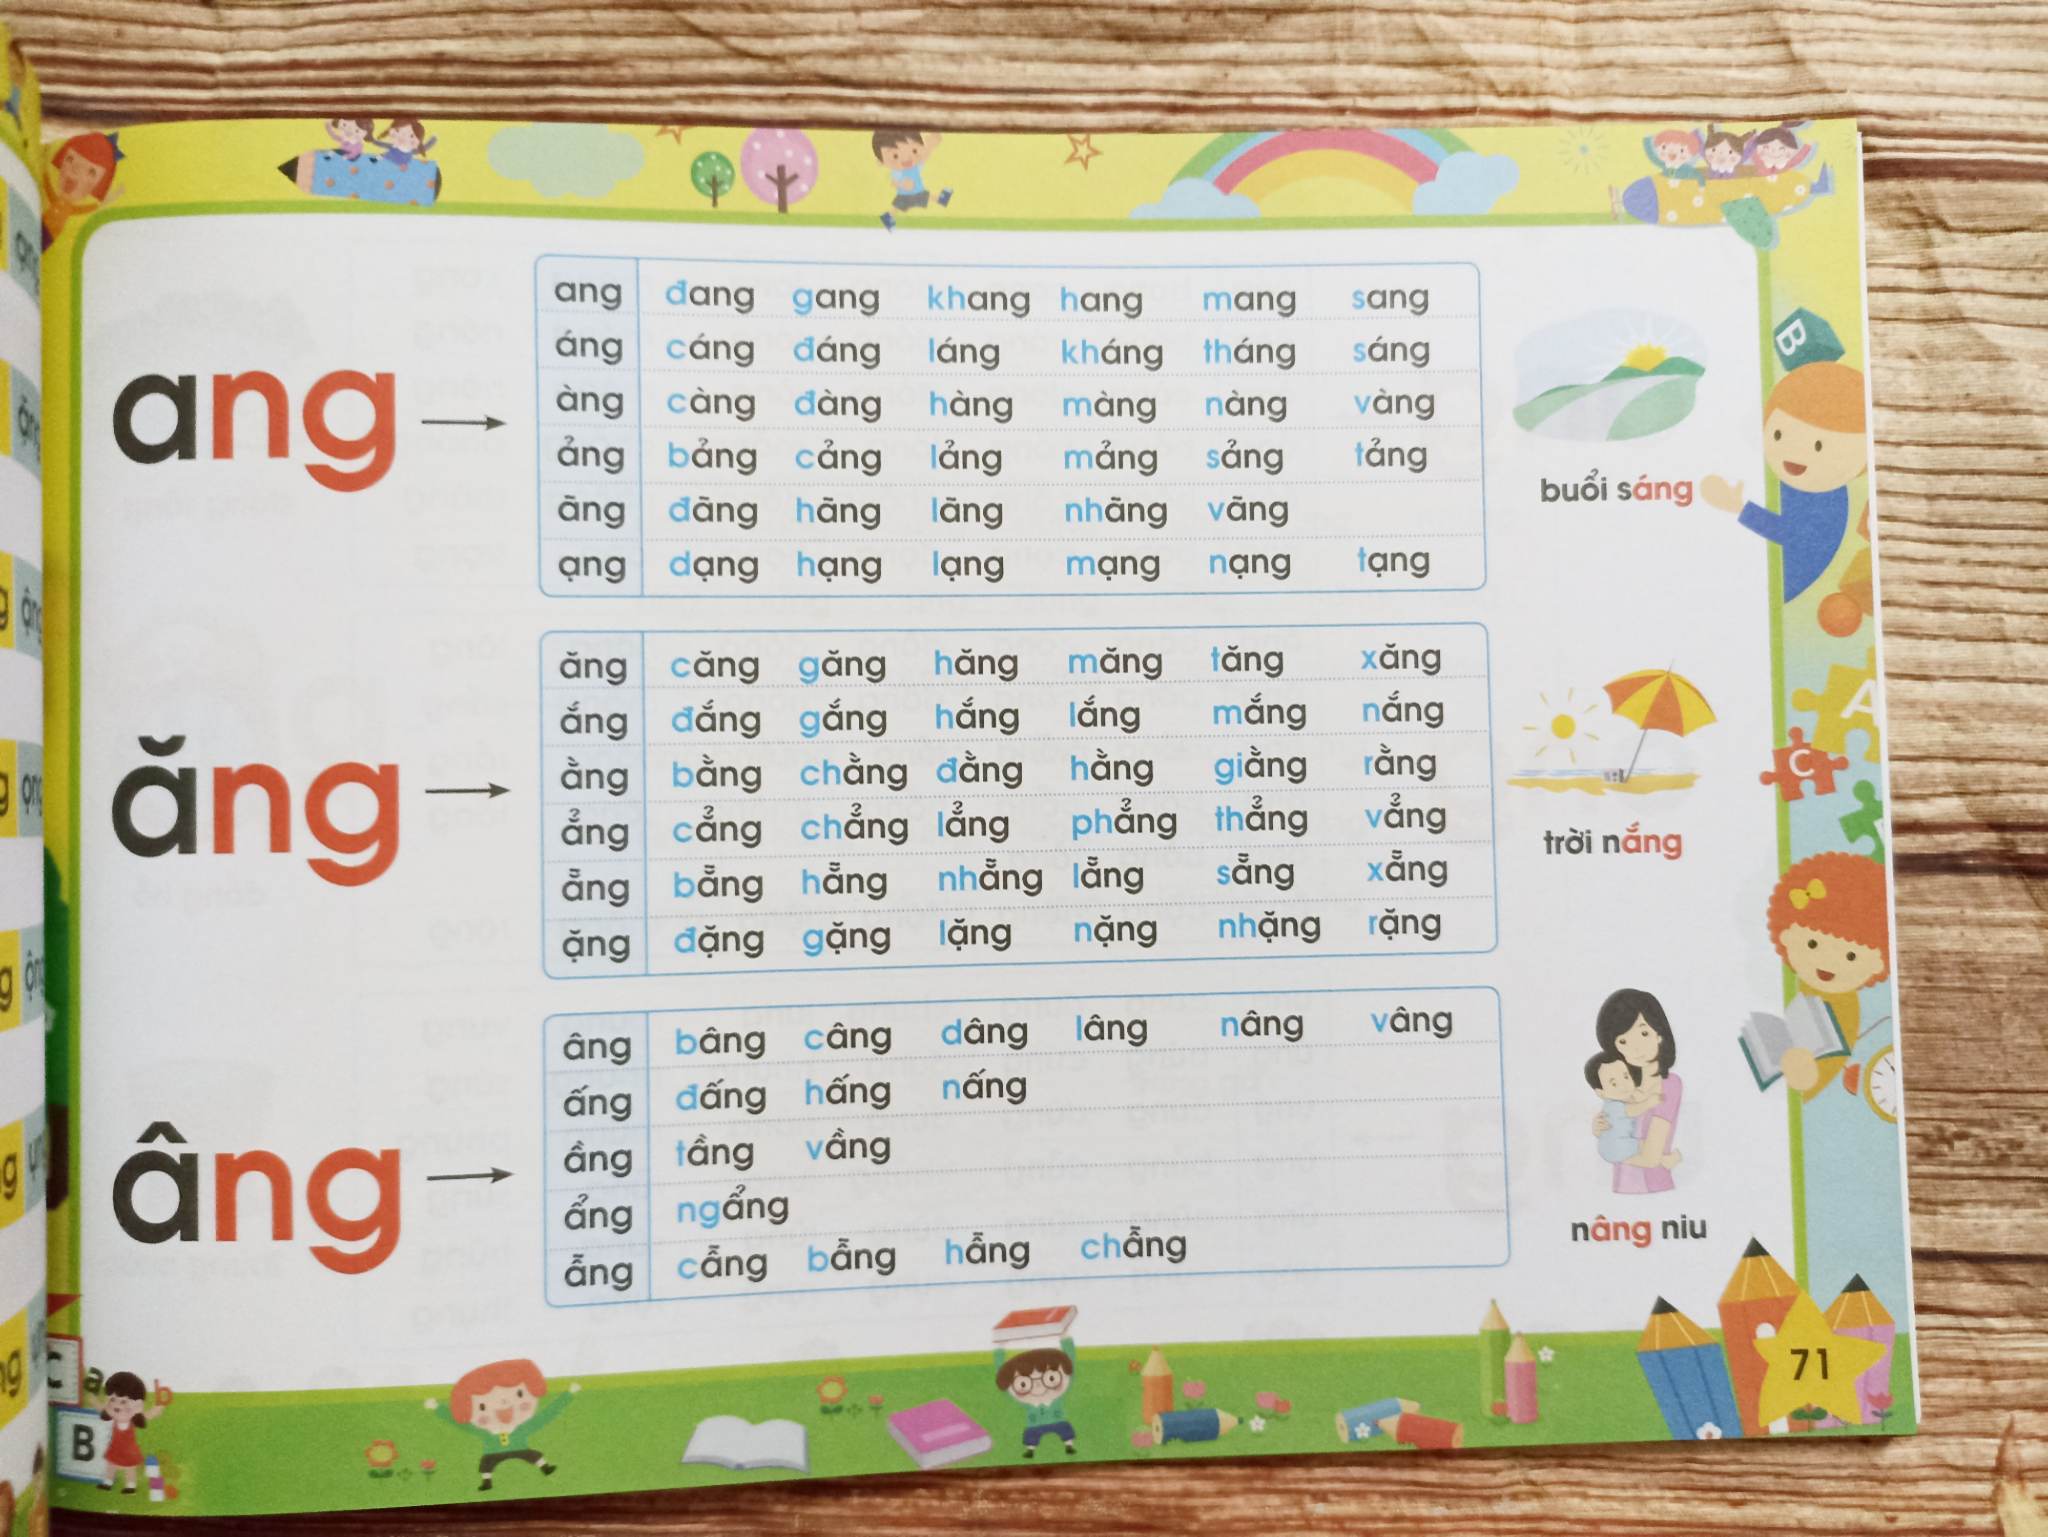 Sách Tập đánh vần Tiếng Việt 124 trang dành cho bé 4-6 tuổi tặng kèm bộ thẻ chữ cái và chữ ghép